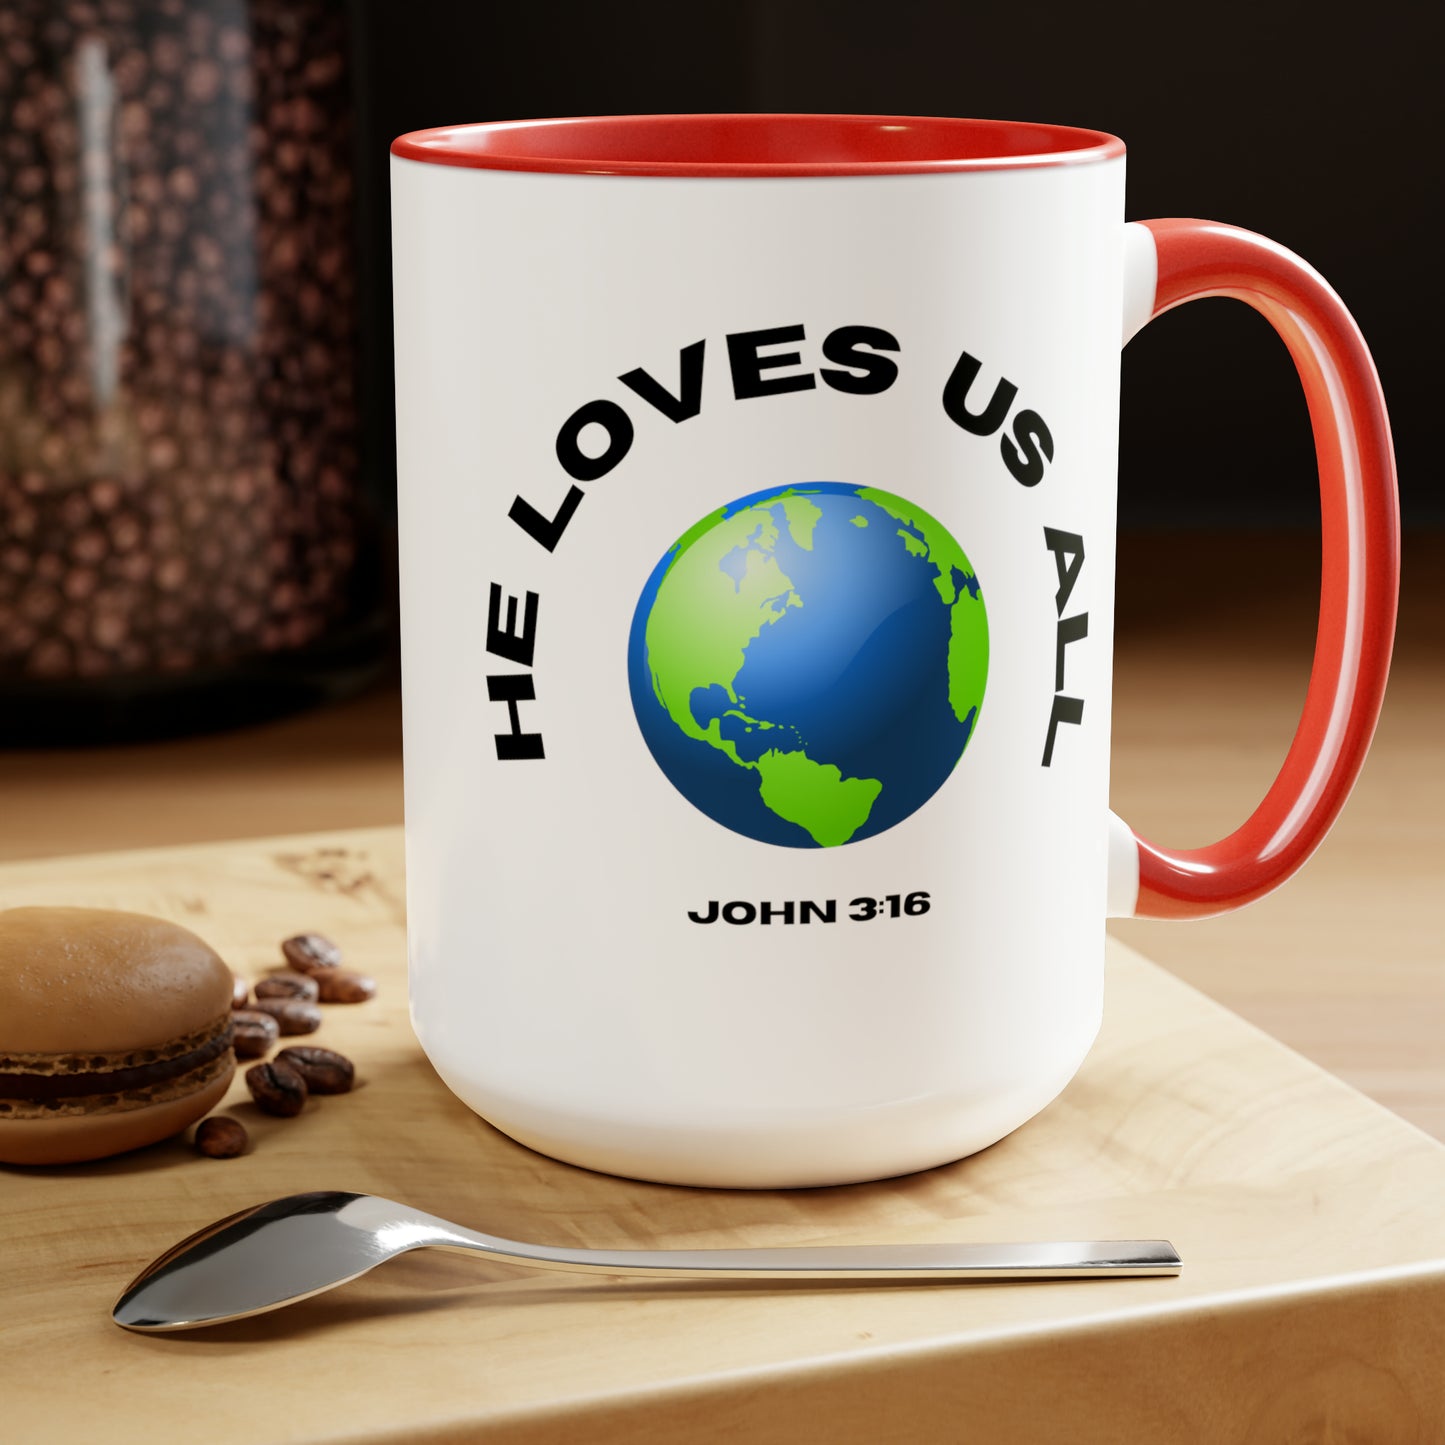 John 3:16, Two-Tone Coffee Mugs, 15oz